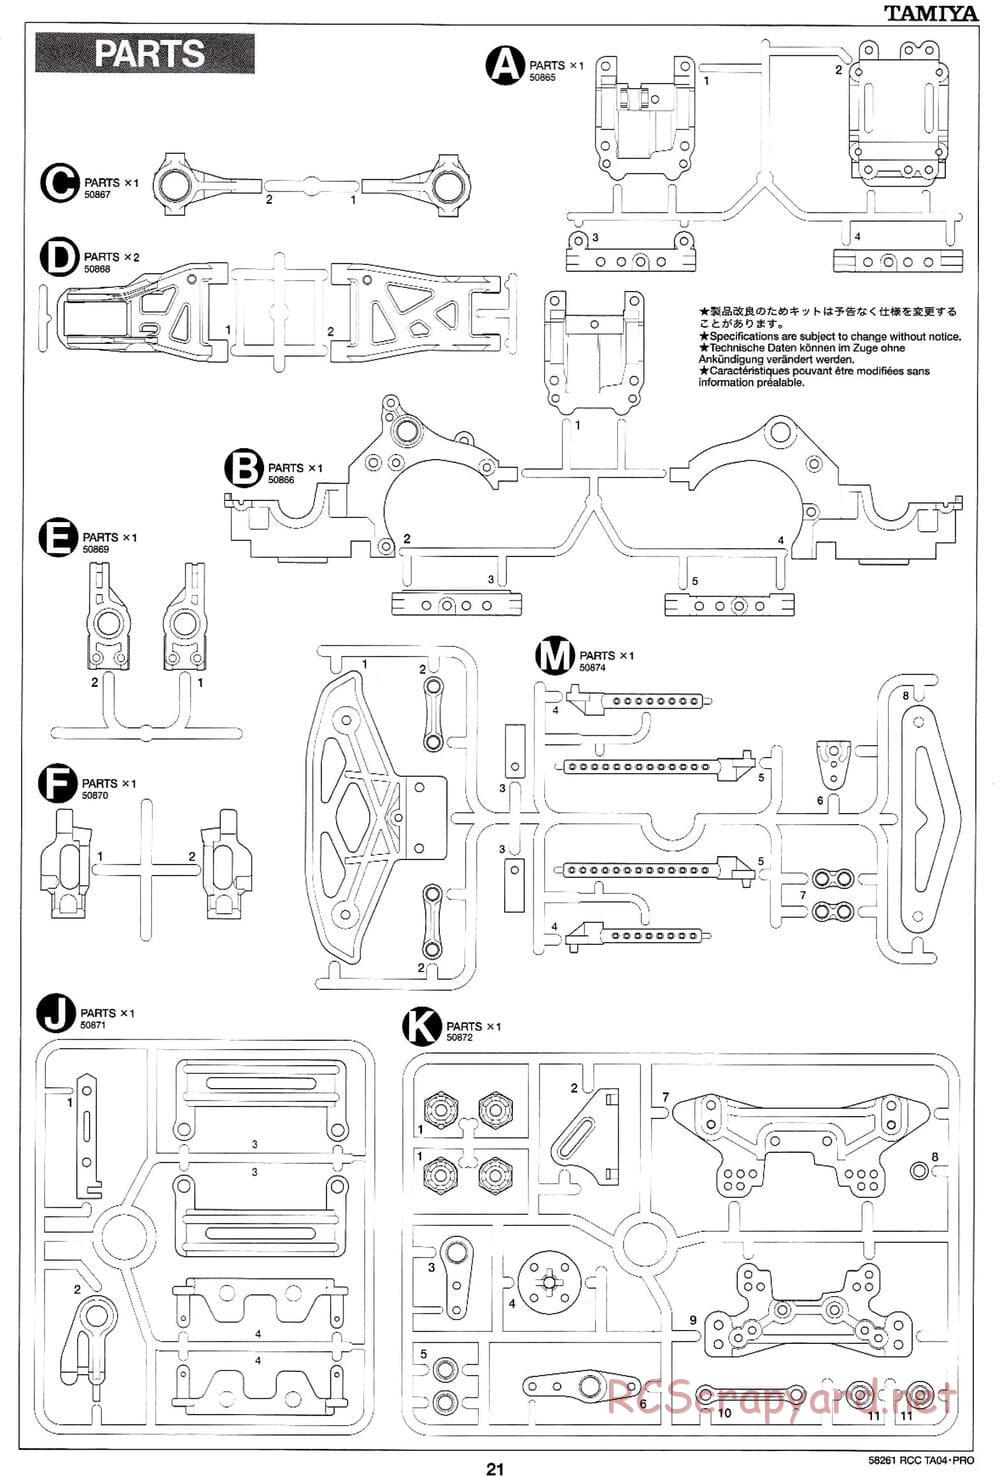 Tamiya - TA-04 Pro Chassis - Manual - Page 21